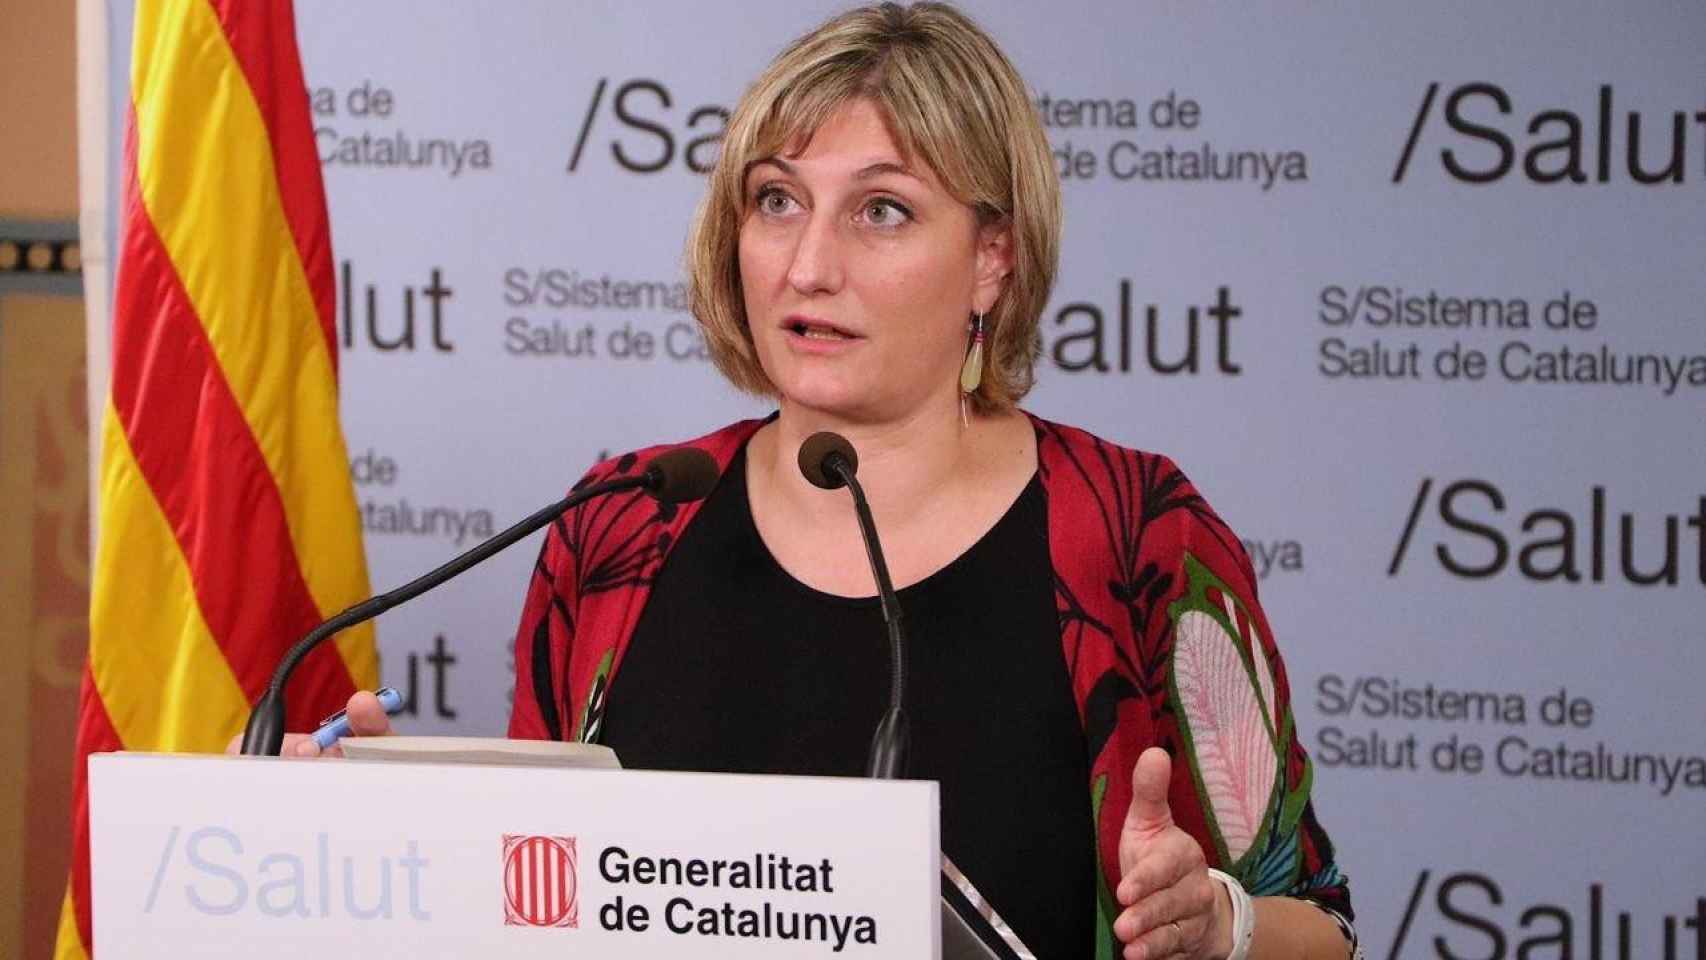 Alba Vergés, consejera de Salud de la Generalitat de Cataluña en la crisis del coronavirus, en una imagen de archivo / EUROPA PRESS